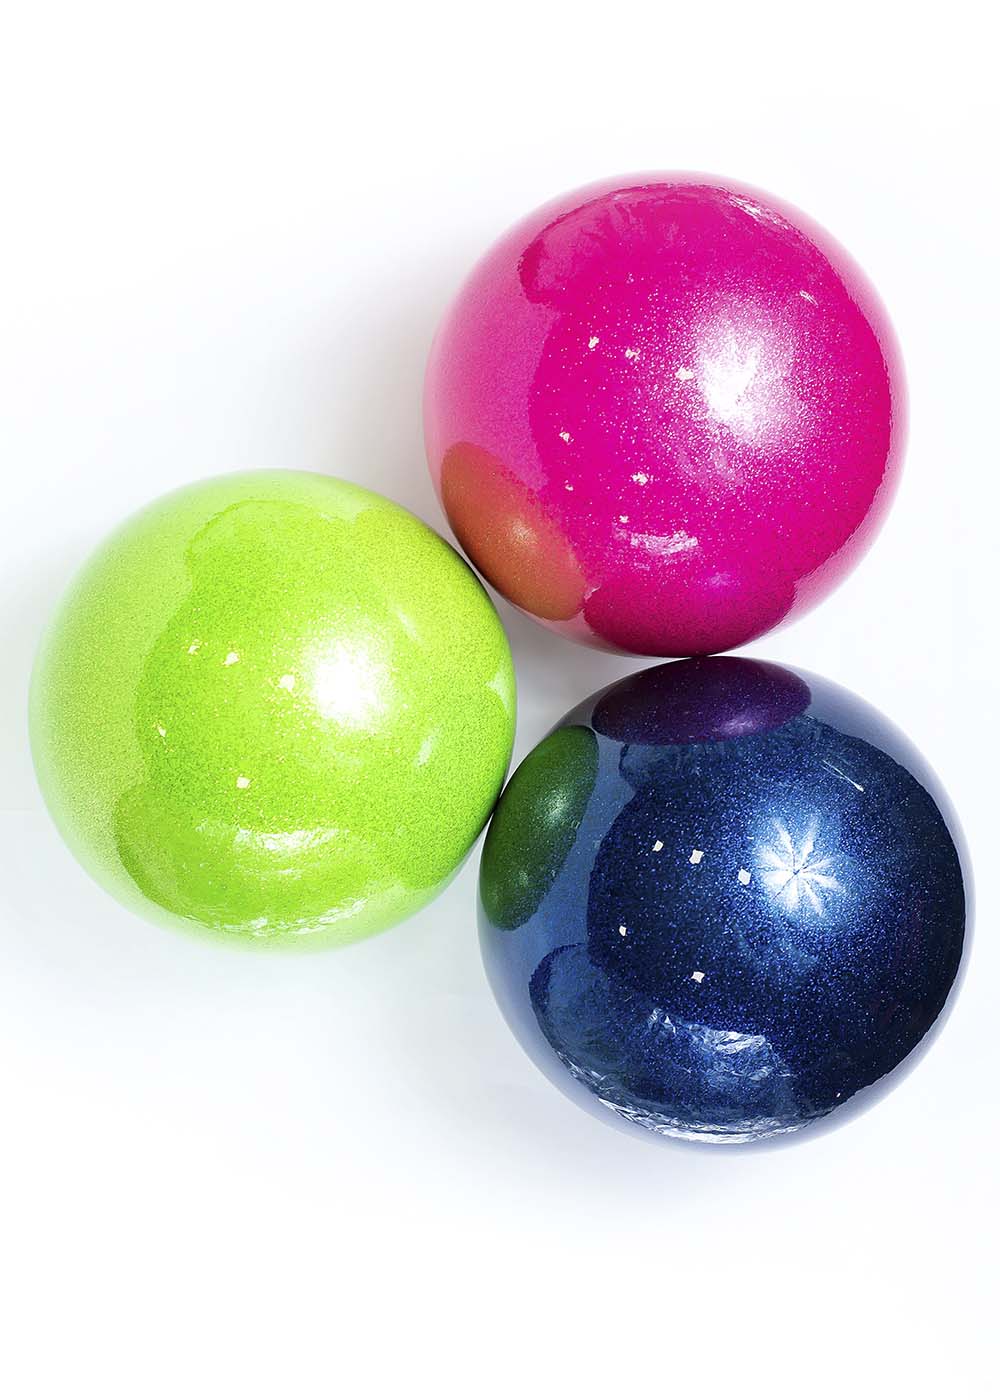 М'яч для гімнастики SASAKI M-207BR купити в магазині Grand Prix